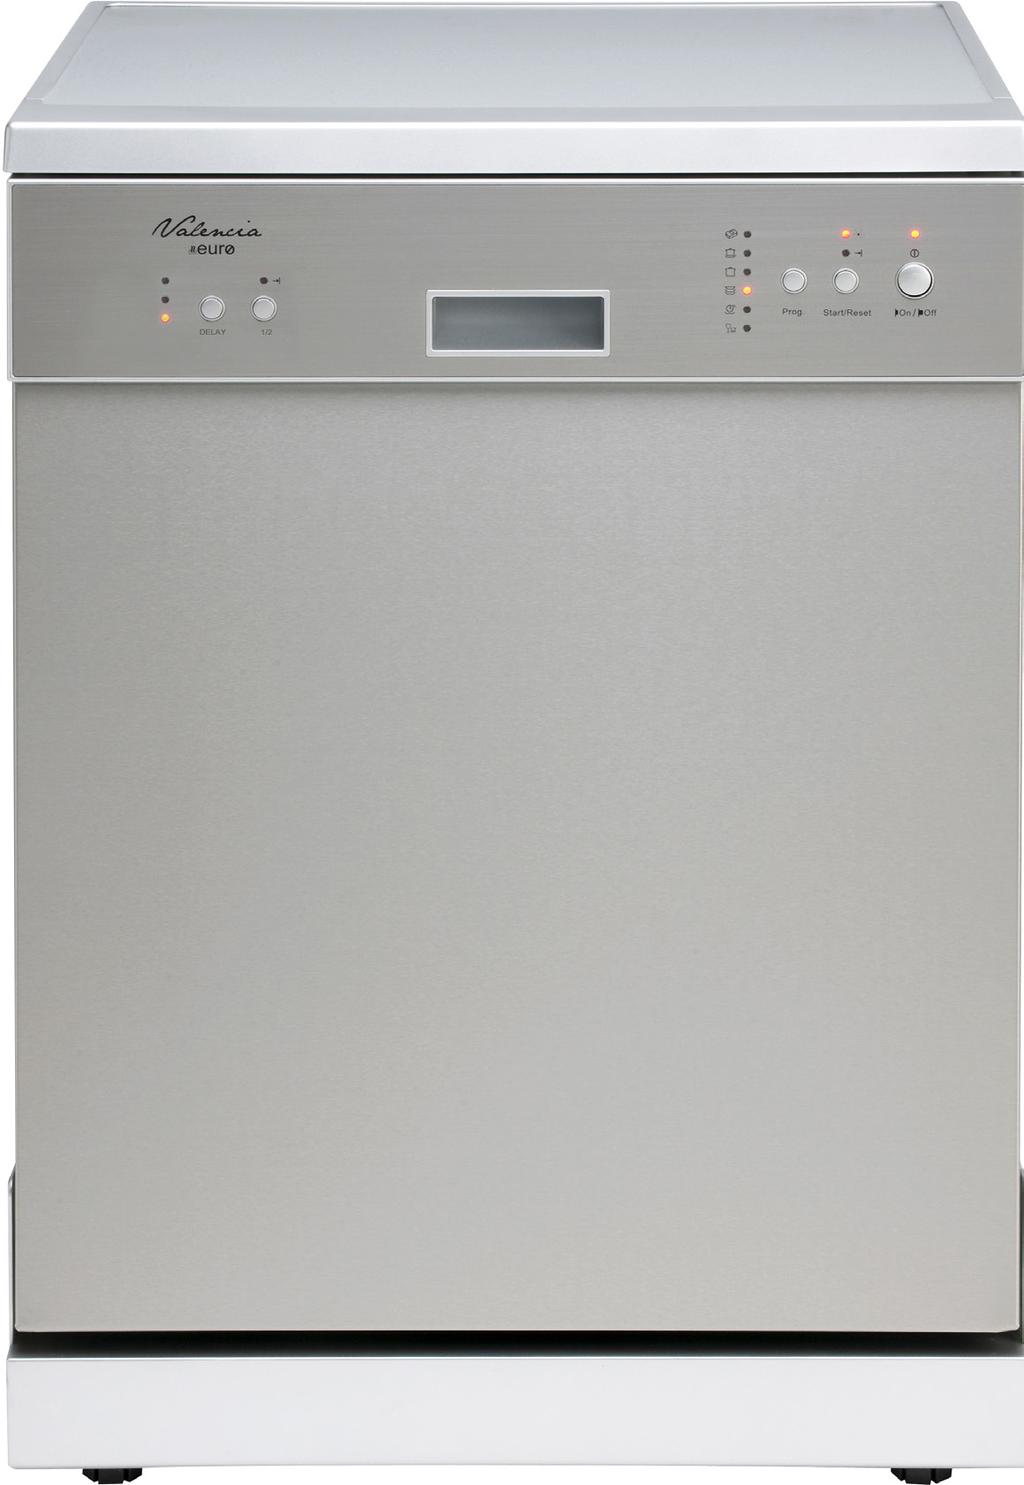 Dishwasher Dishwasher 600mm Freestanding Dishwasher Dishwasher 12 place setting Half load option Delay start option 6 Wash